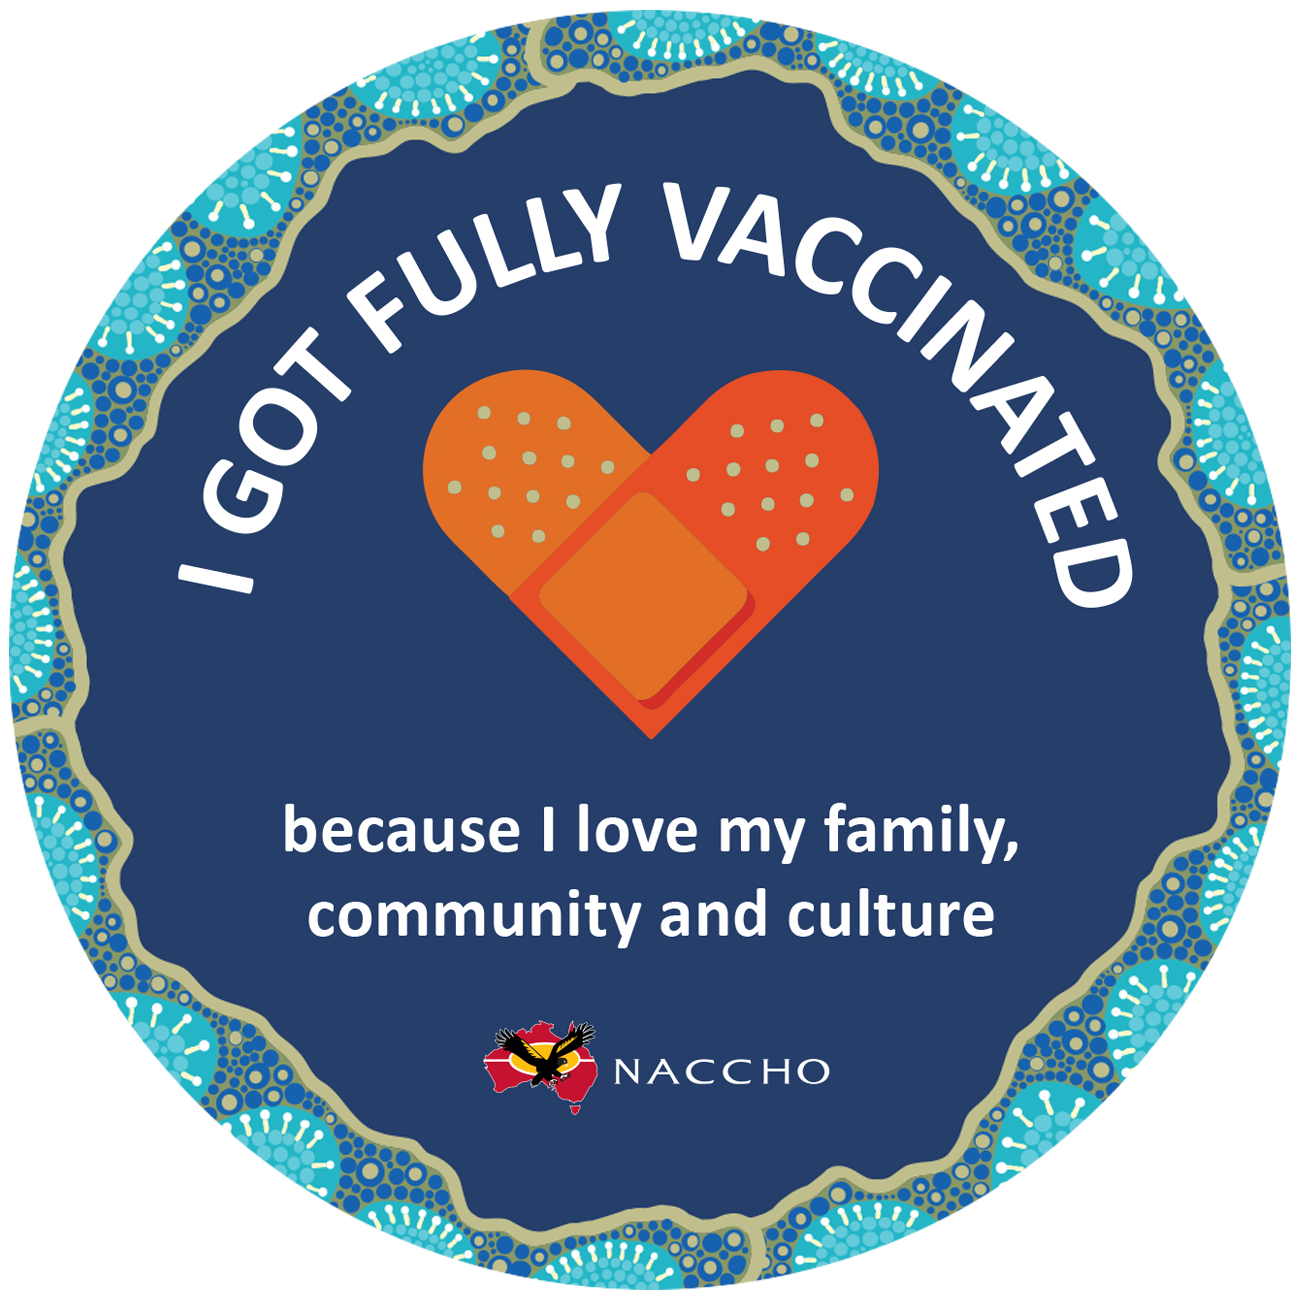 I Got Vaccinated - logo - circular